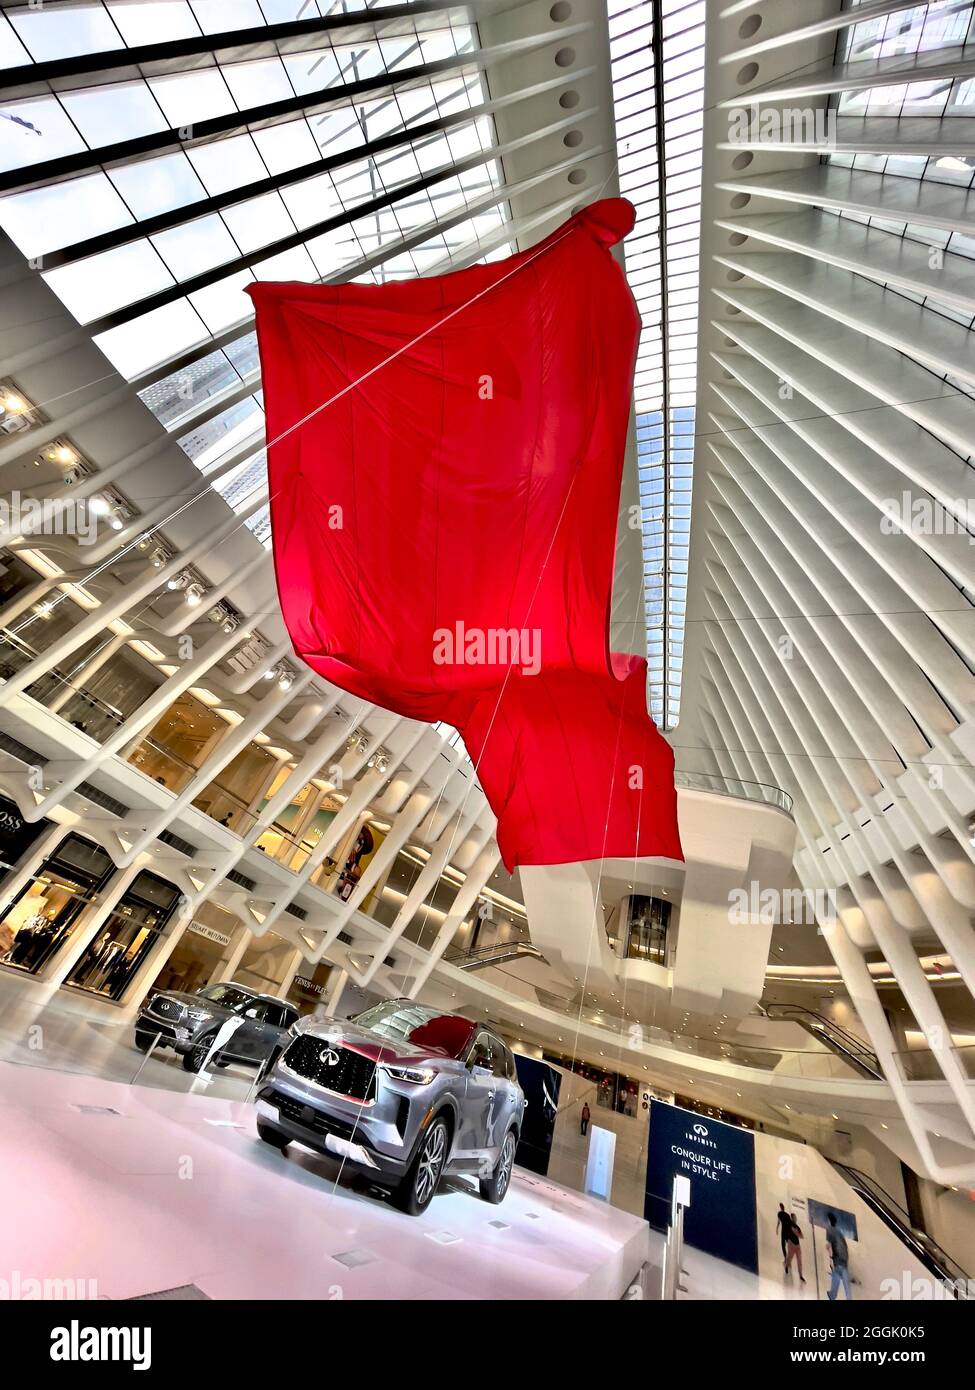 Grande bandiera rossa sopra la nuova auto Infiniti del 2021 all'interno dell'Oculus al World Trade Center di Manhattan, NYC Foto Stock